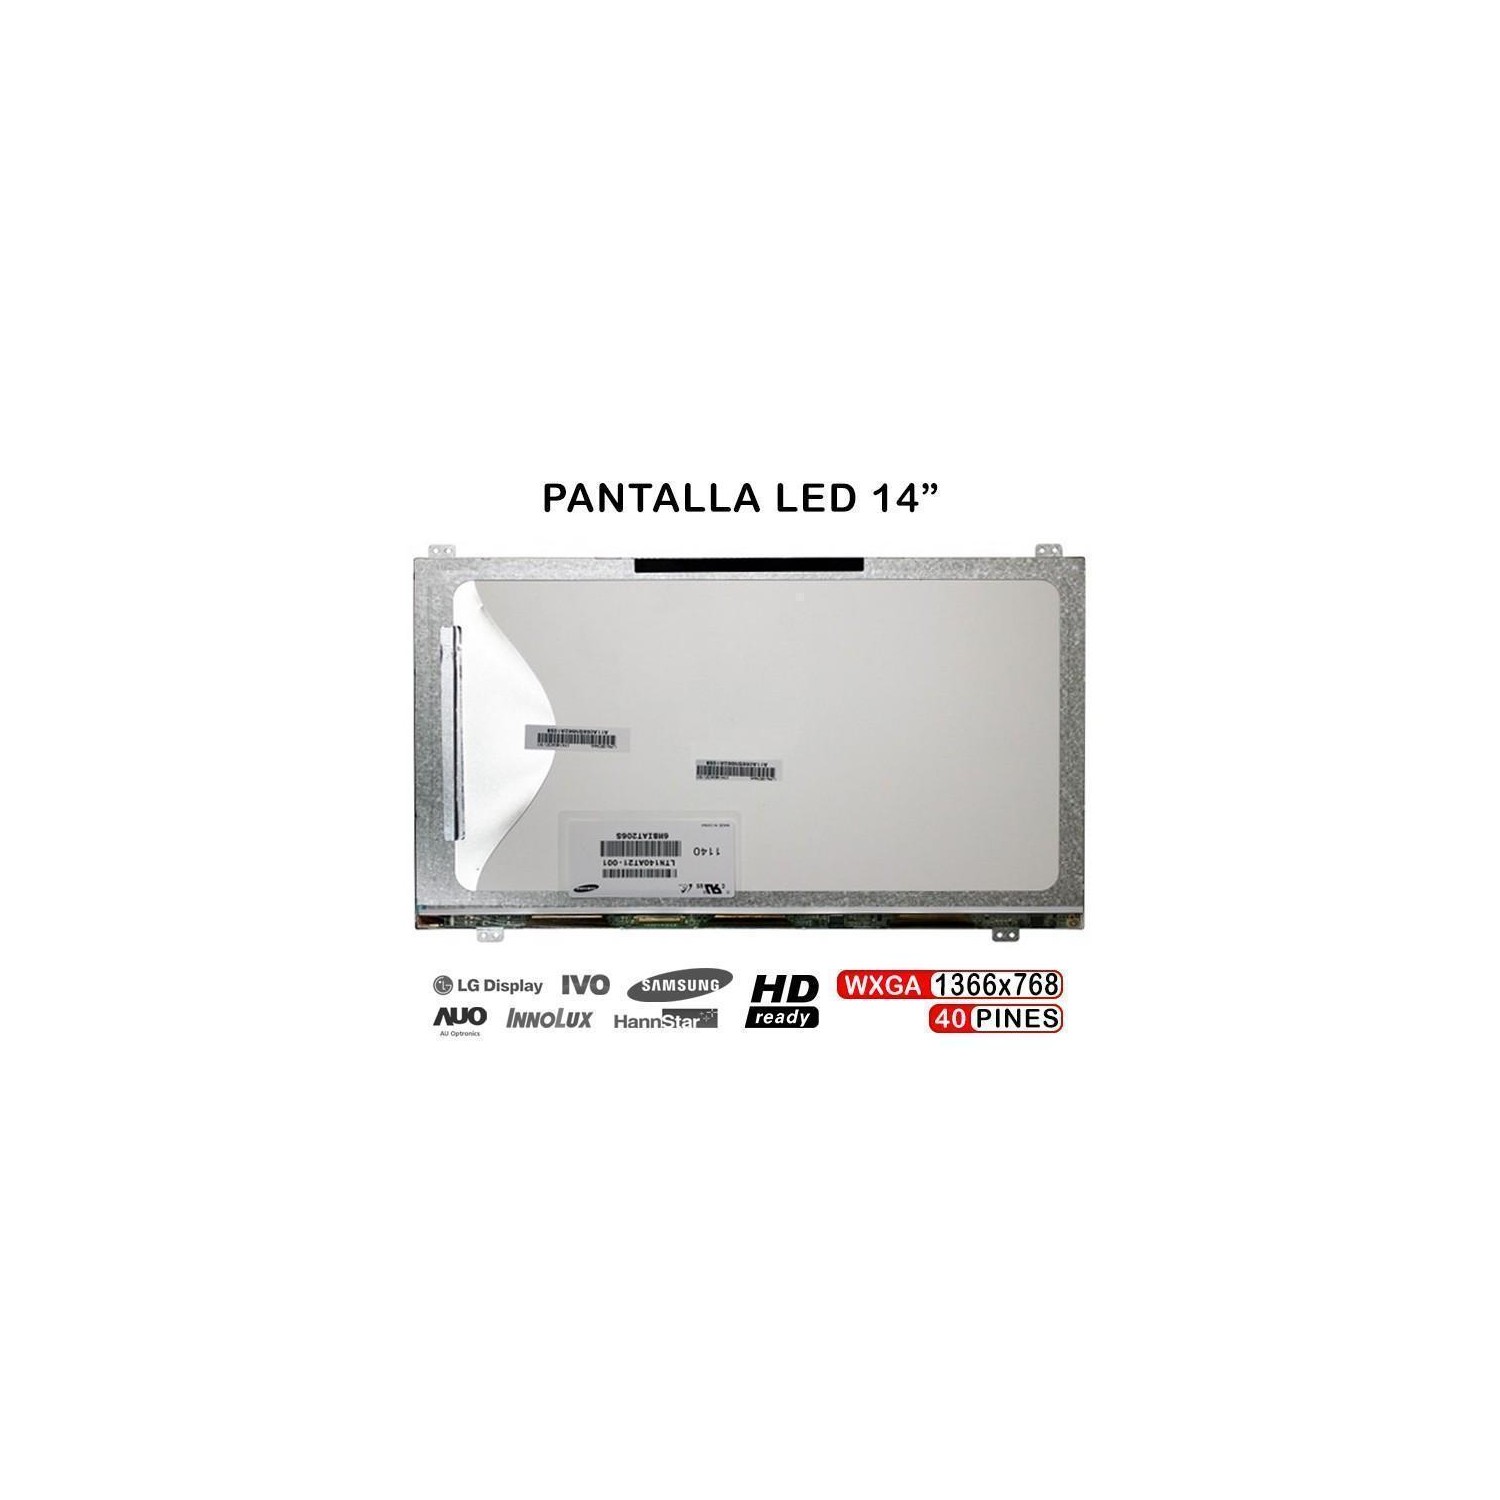 PANTALLA PORTÁTIL LED LTN140AT21 LTN140AT21-804 LTN140AT21-802 LTN140AT21-803